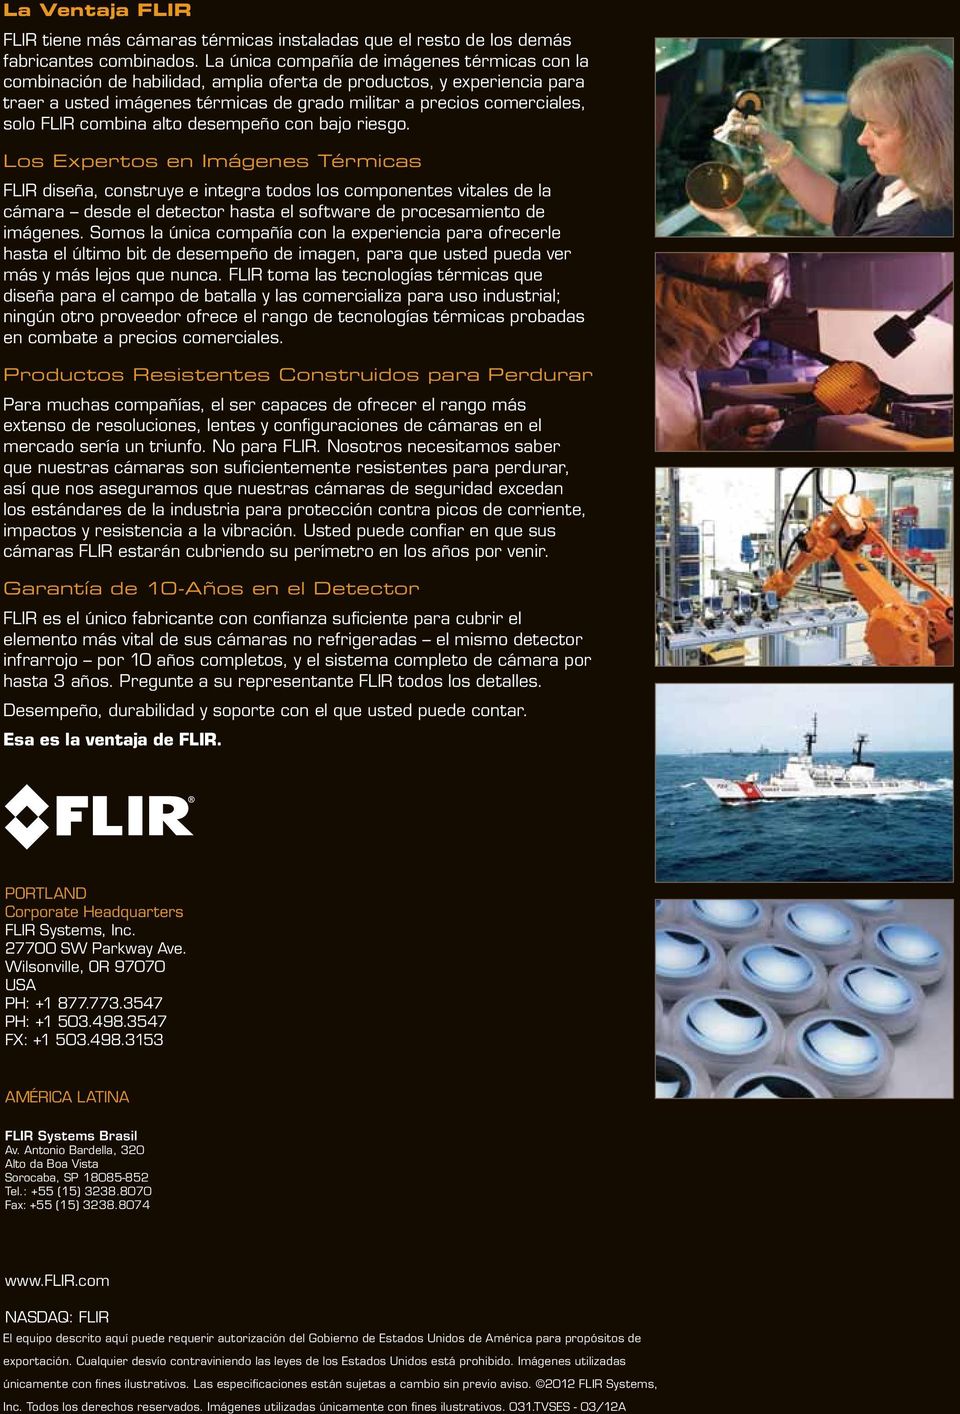 FLIR combina alto desempeño con bajo riesgo.